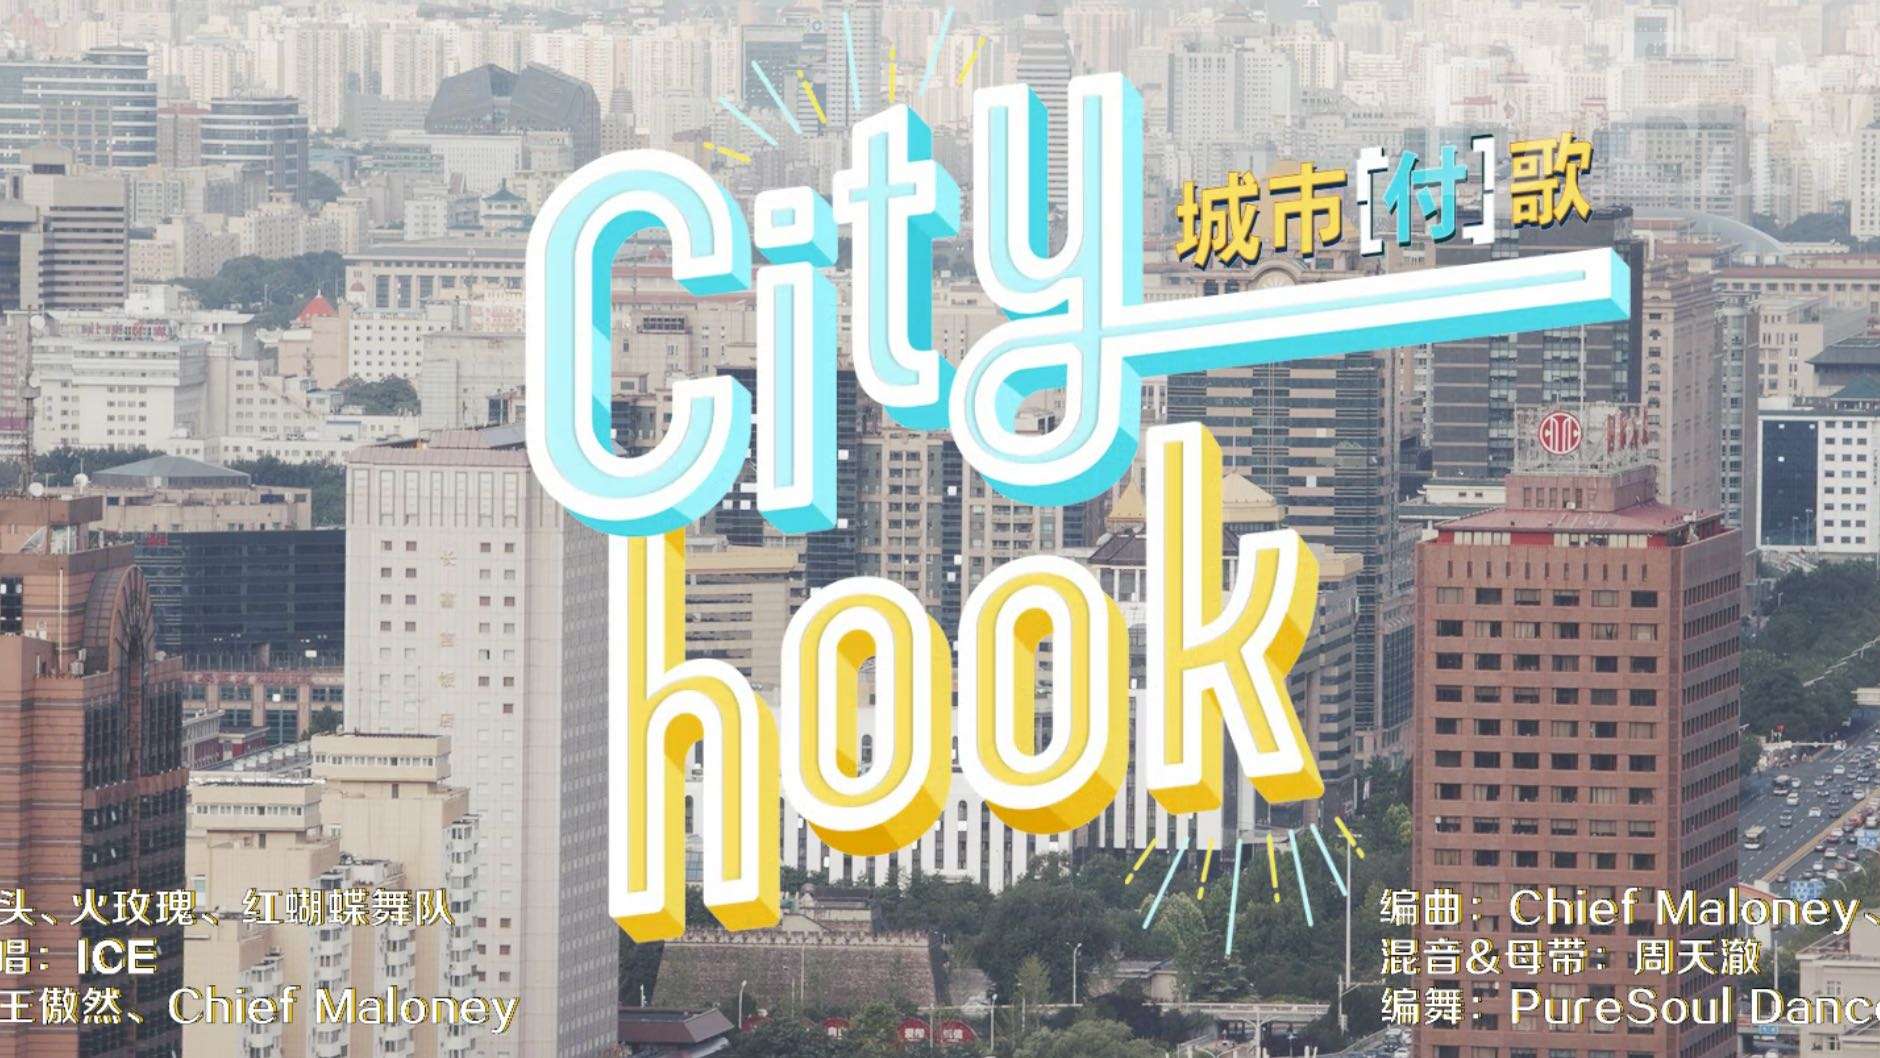 支付宝城市周广场舞MV《City hook》